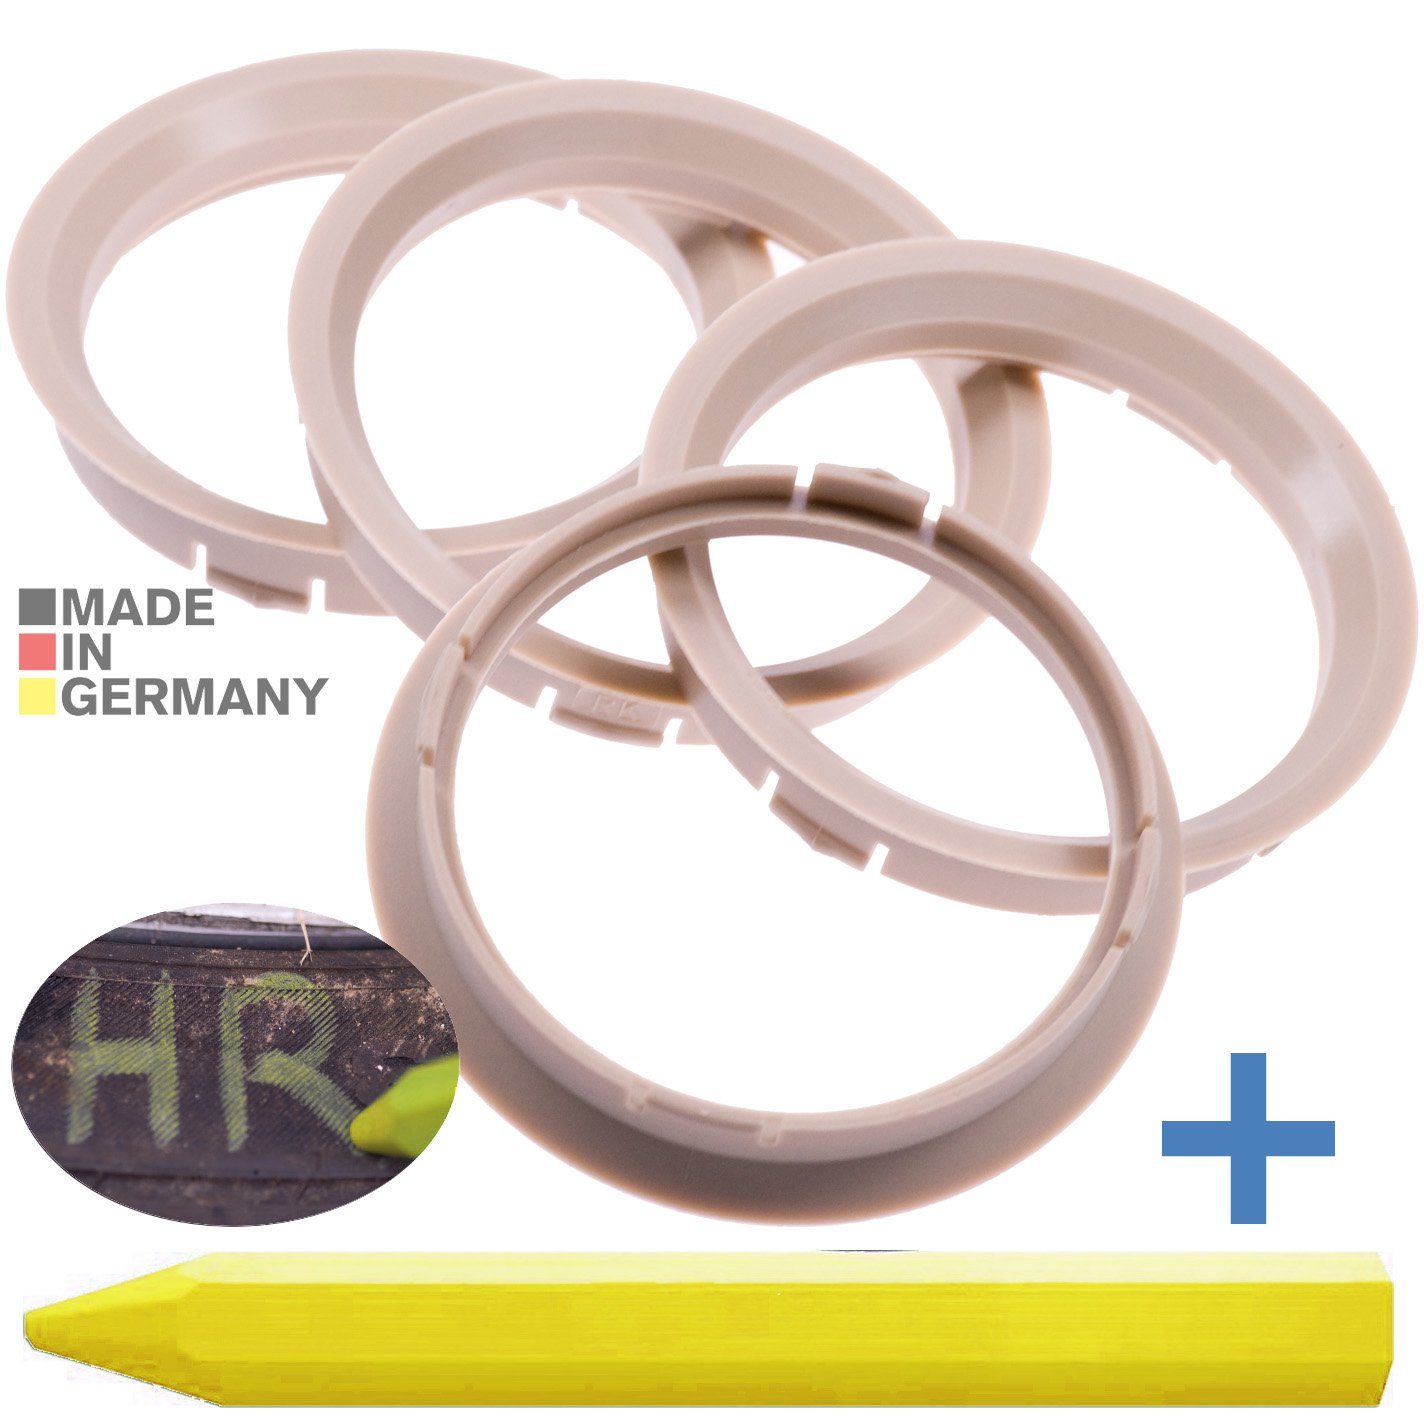 RKC Reifenstift 4X Zentrierringe Beige Felgen Ringe + 1x Reifen Kreide Fett Stift, Maße: 74,1 x 72,6 mm